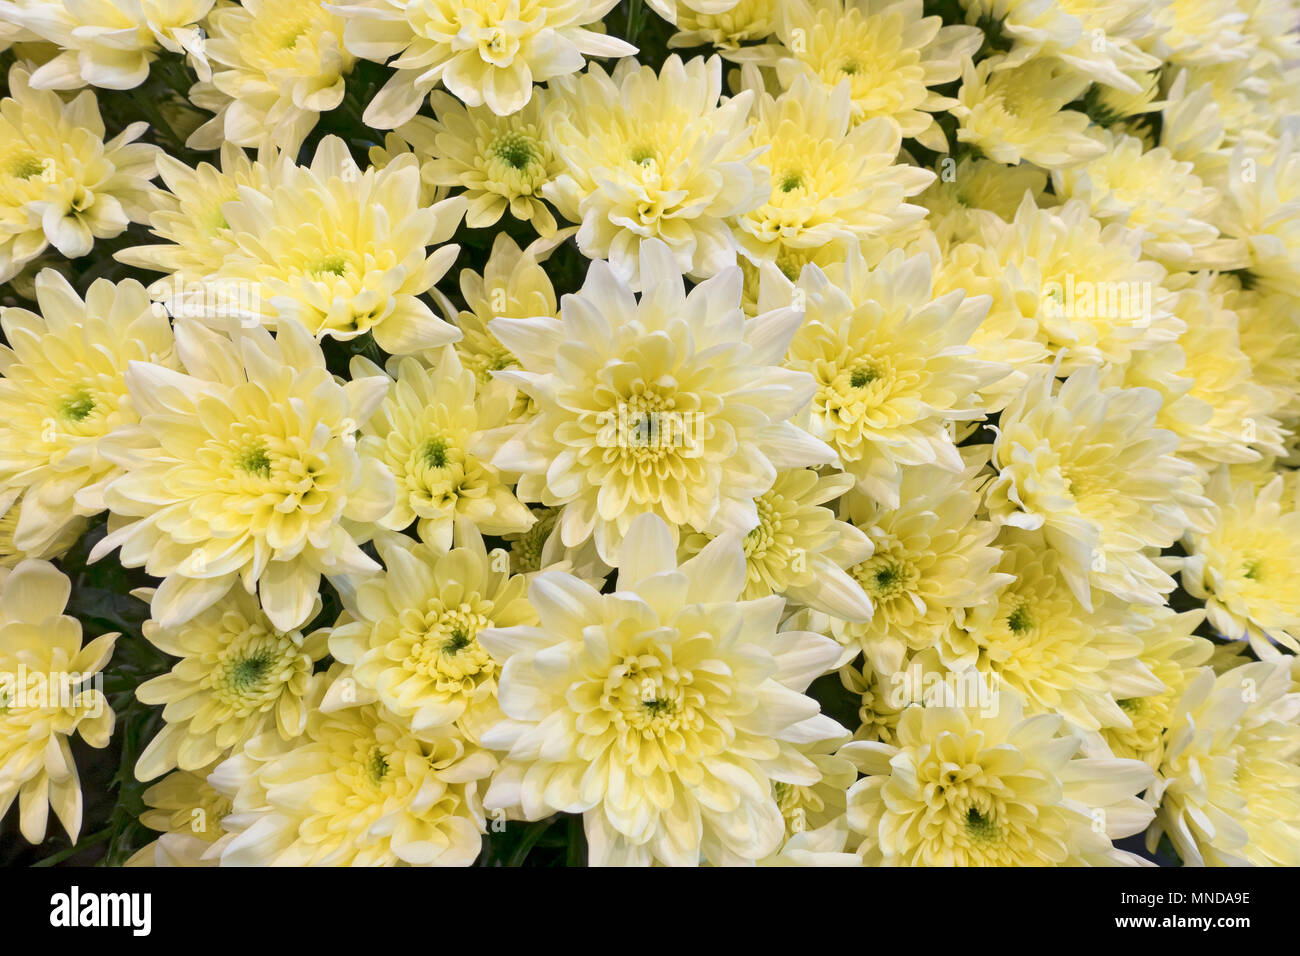 Gros plan de chrysanthèmes jaune pâle fleurs chrysanthème fleur Angleterre Royaume-Uni GB Grande-Bretagne Banque D'Images